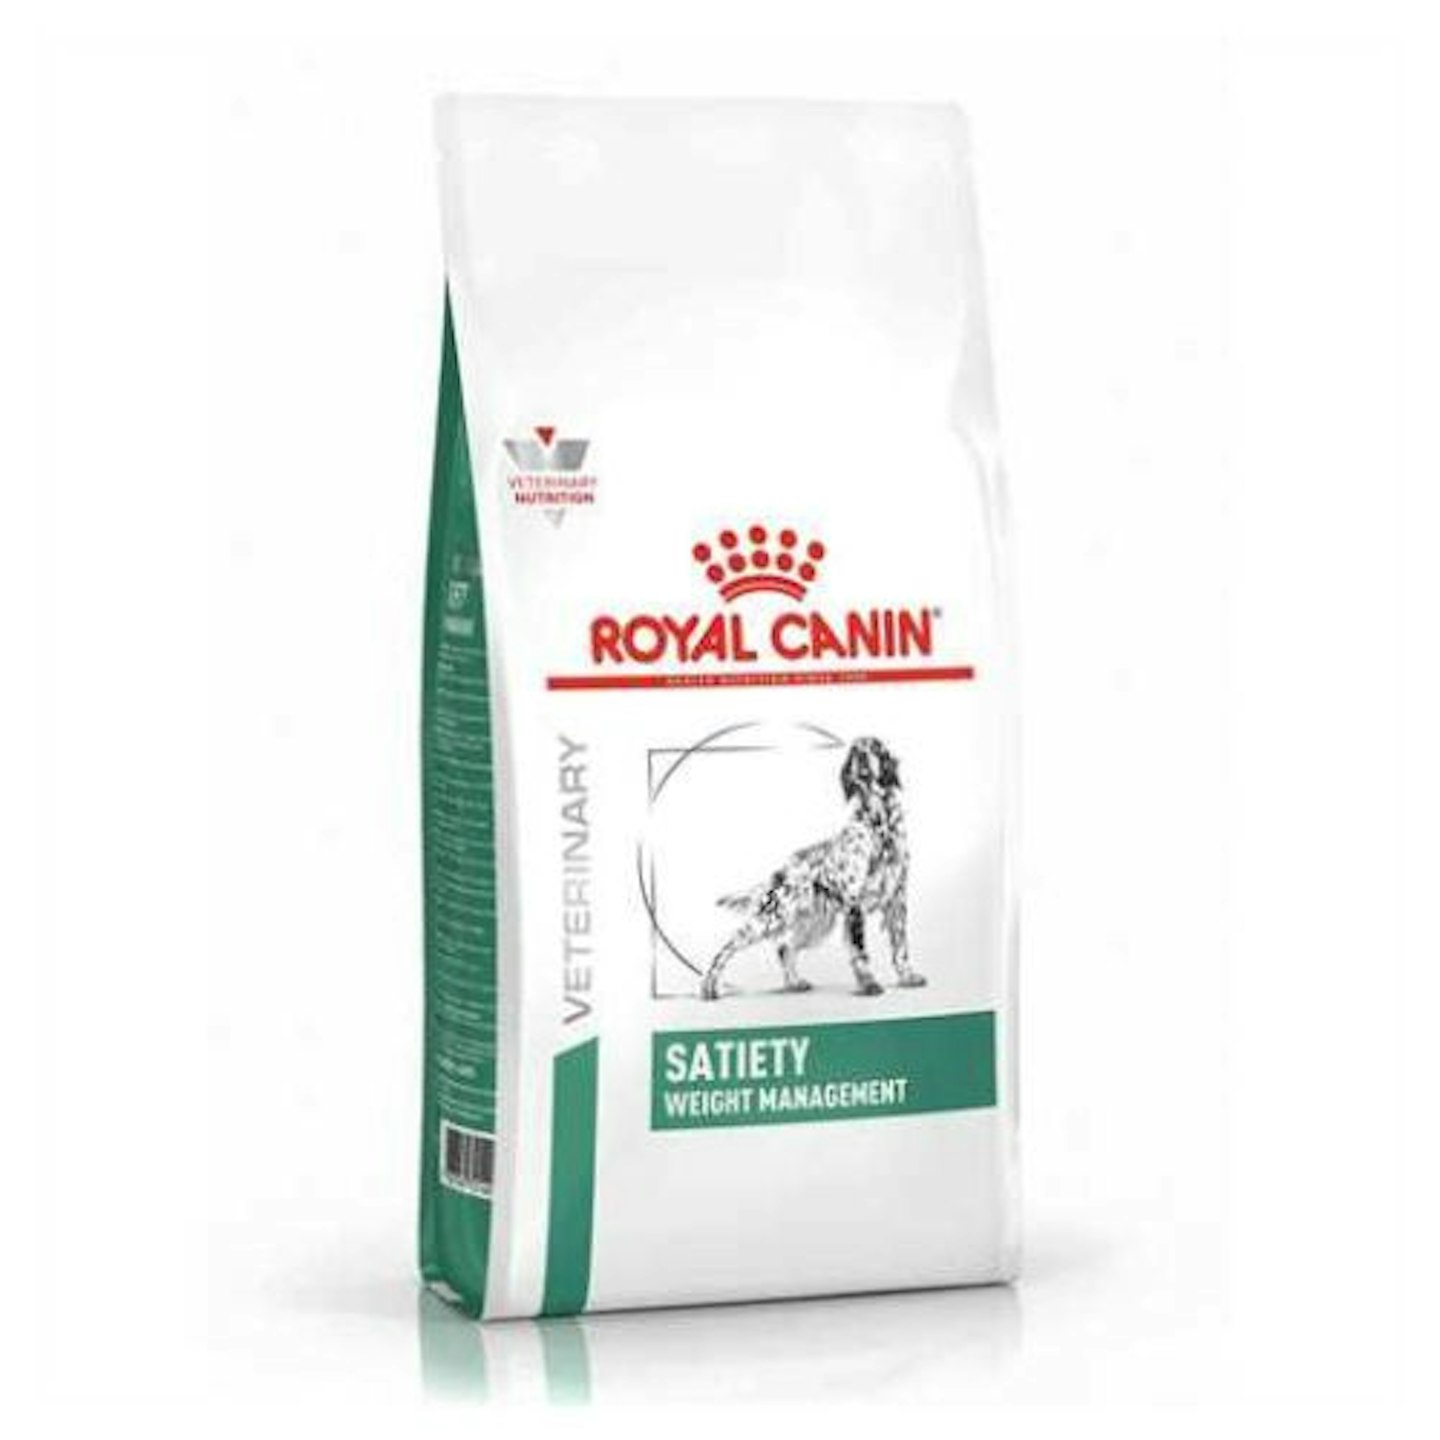 Royal Canin Veterinary Health Nutrition Satiety